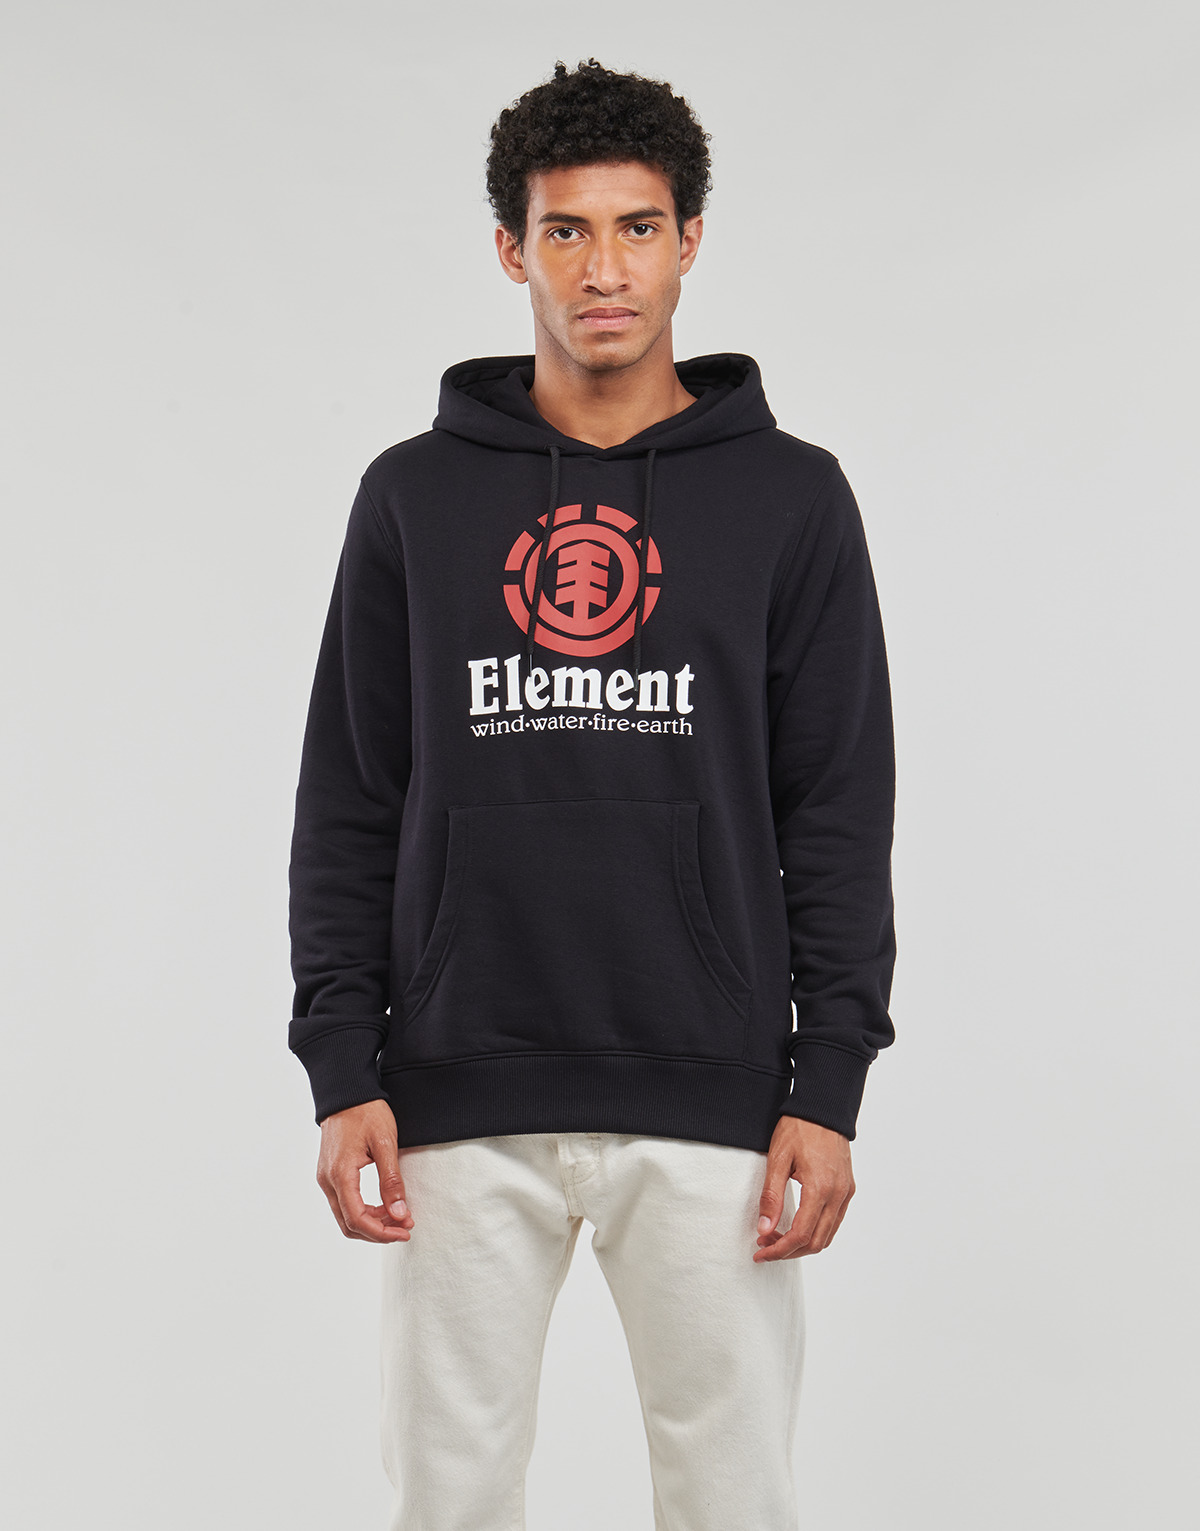 Textiel Heren Sweaters / Sweatshirts Element FLINT BLACK Zwart